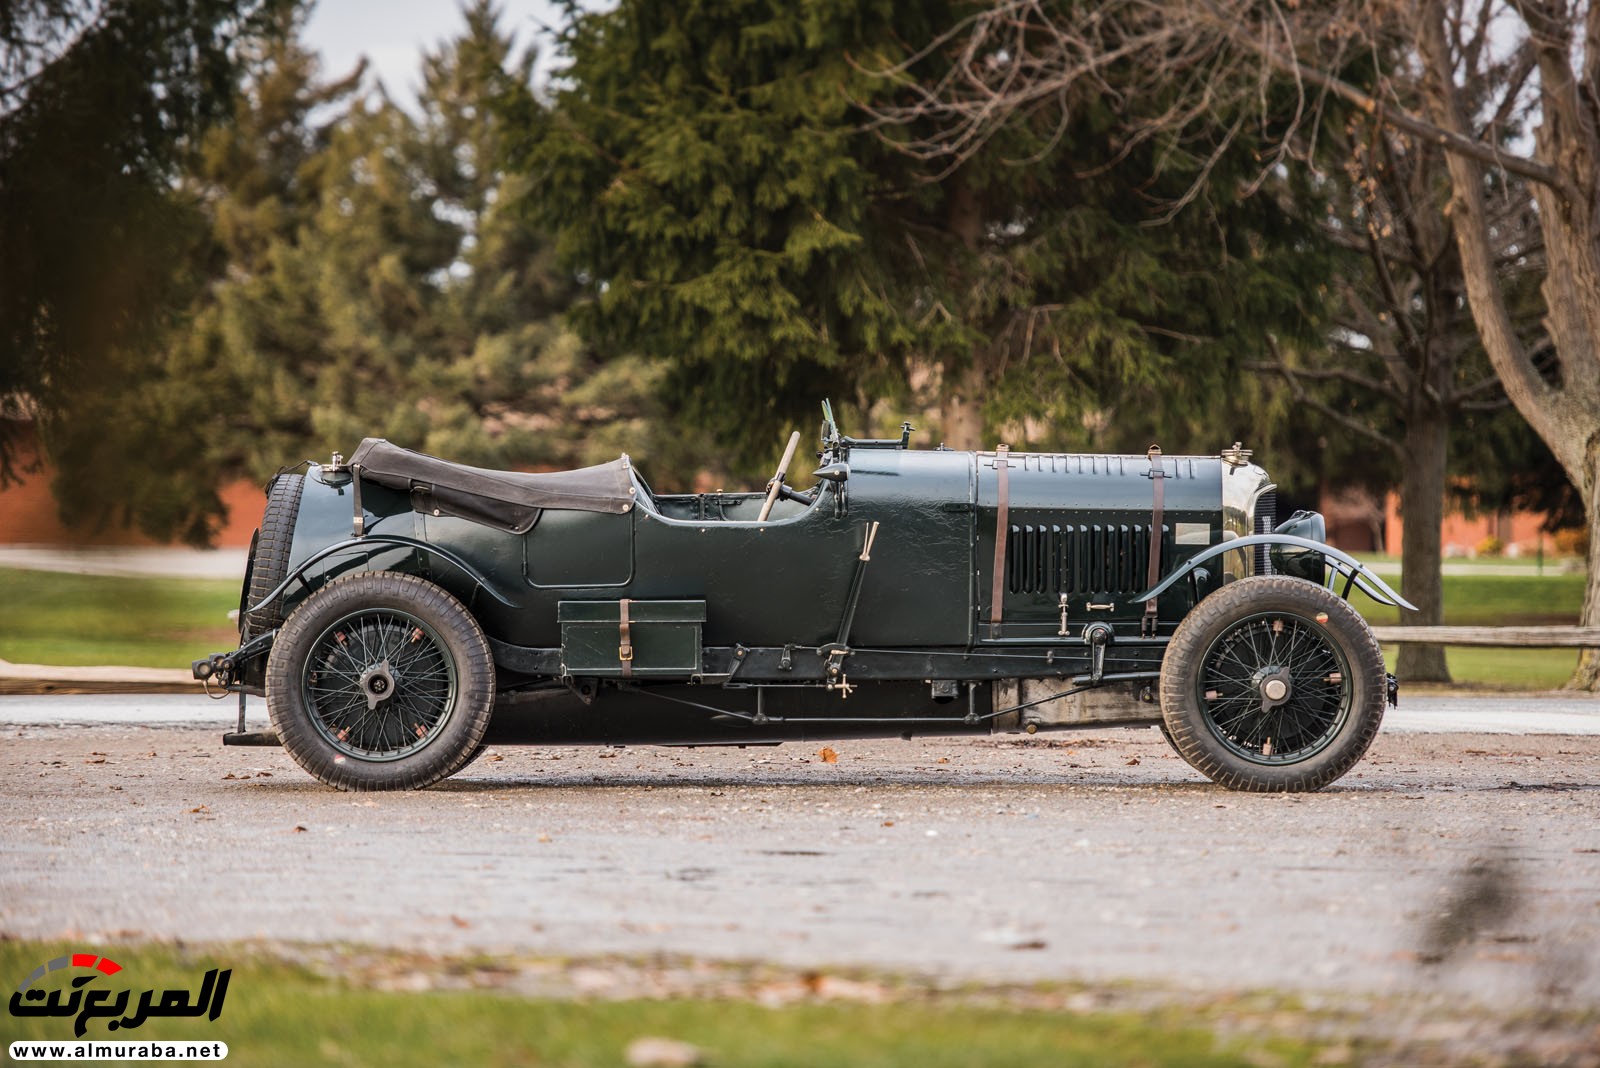 "بالصور" سيارة بنتلي موديل 1928 المشاركة في سباقات لومان تعرض بـ 7 مليون دولار في مزاد علني 89